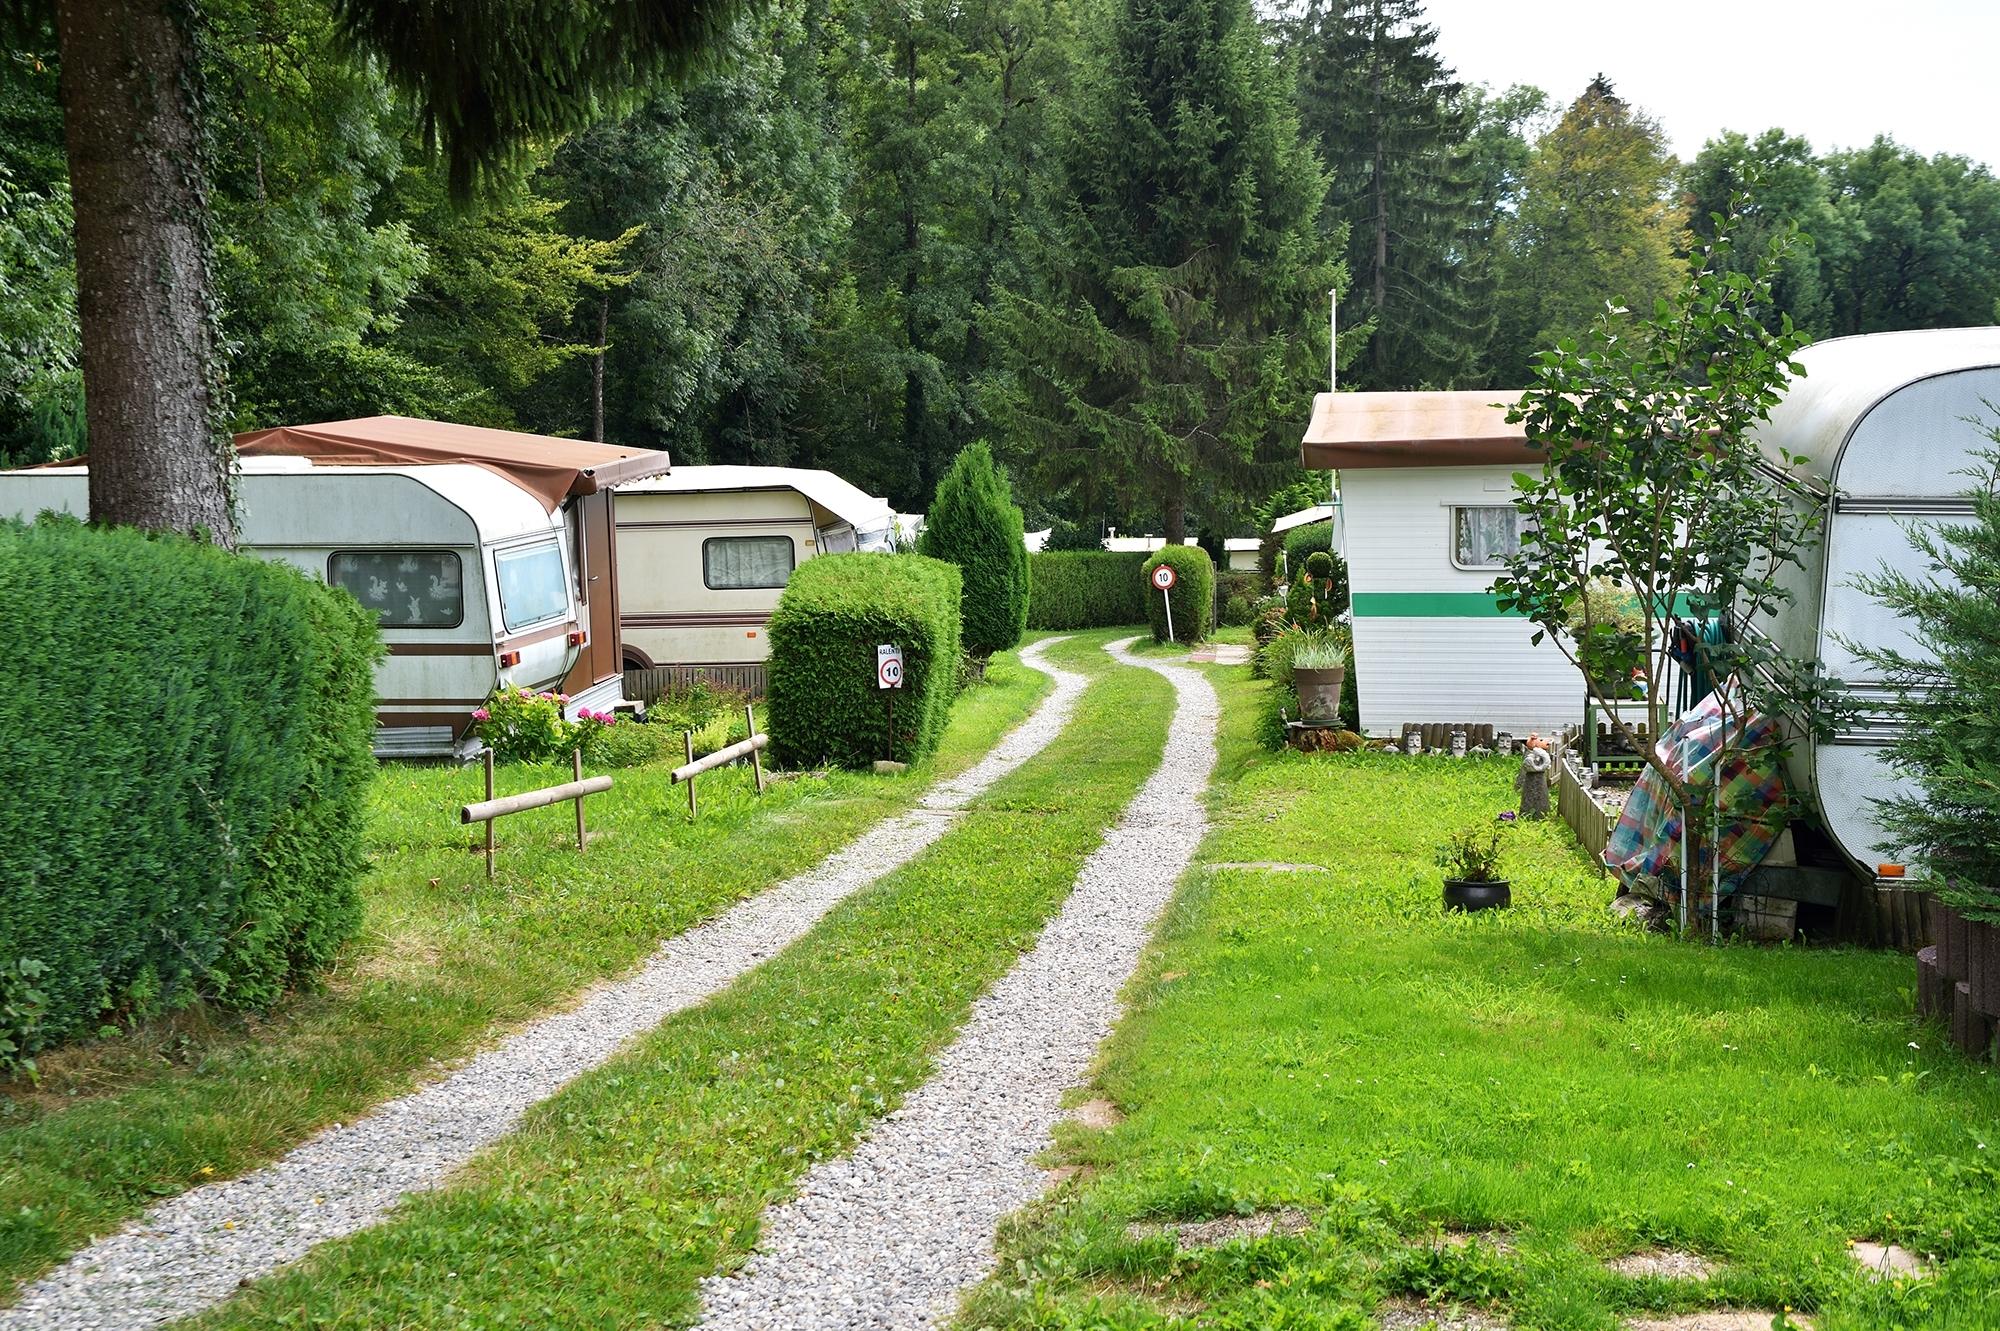 VD_Croix-sur-Lutry_Camping_Portillon_(9)